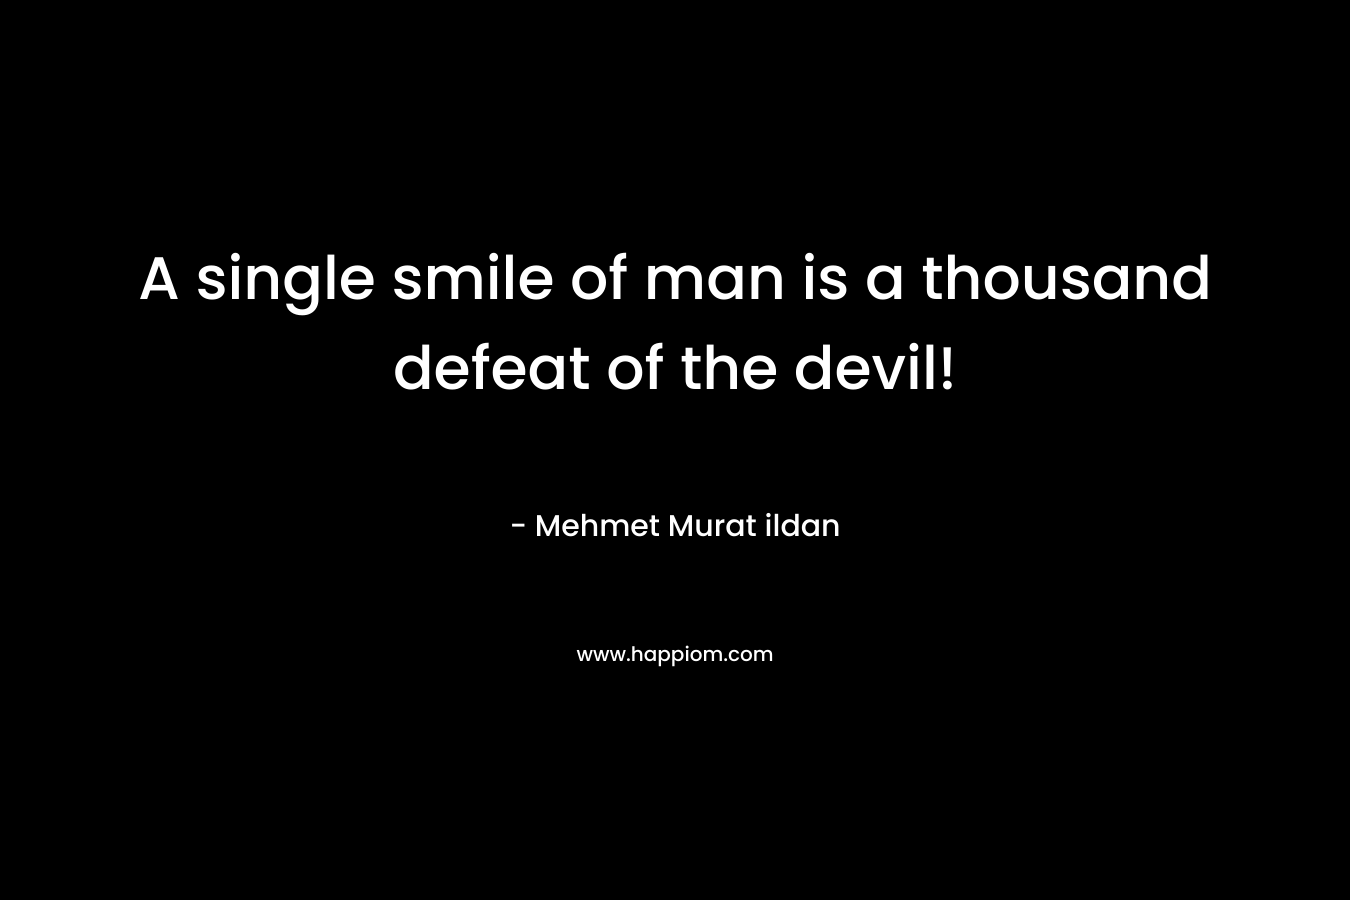 A single smile of man is a thousand defeat of the devil! – Mehmet Murat ildan